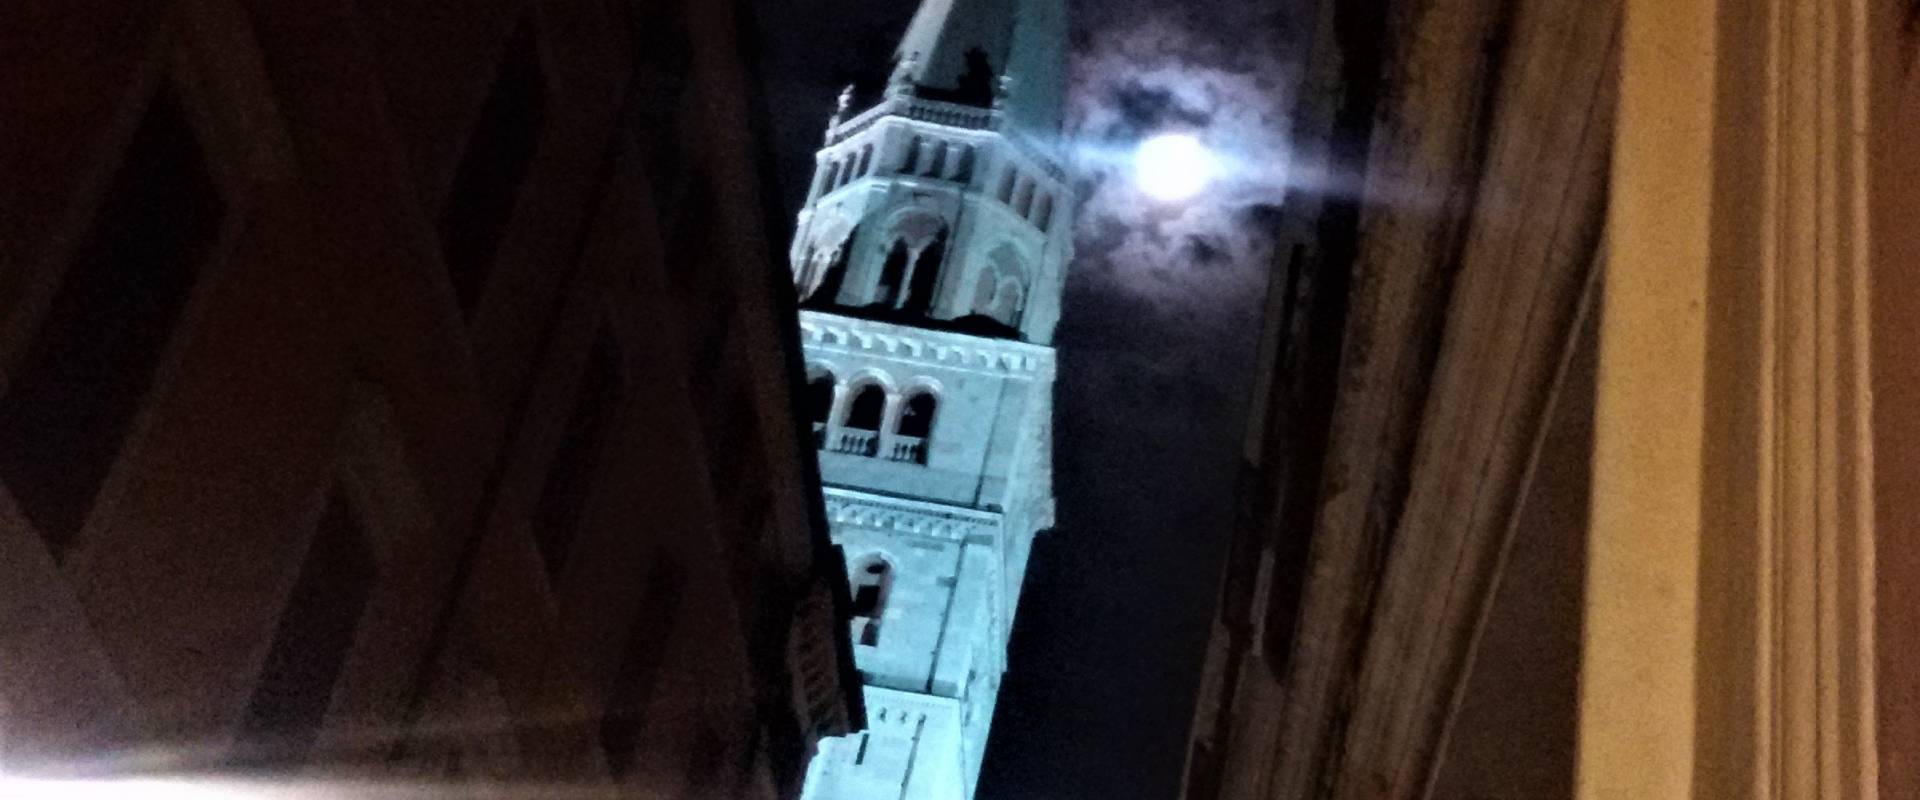 Torre della Ghirlandina - foto 6 foto di Ettorre - gregorio (ettorre(at)gmail(dot)com)